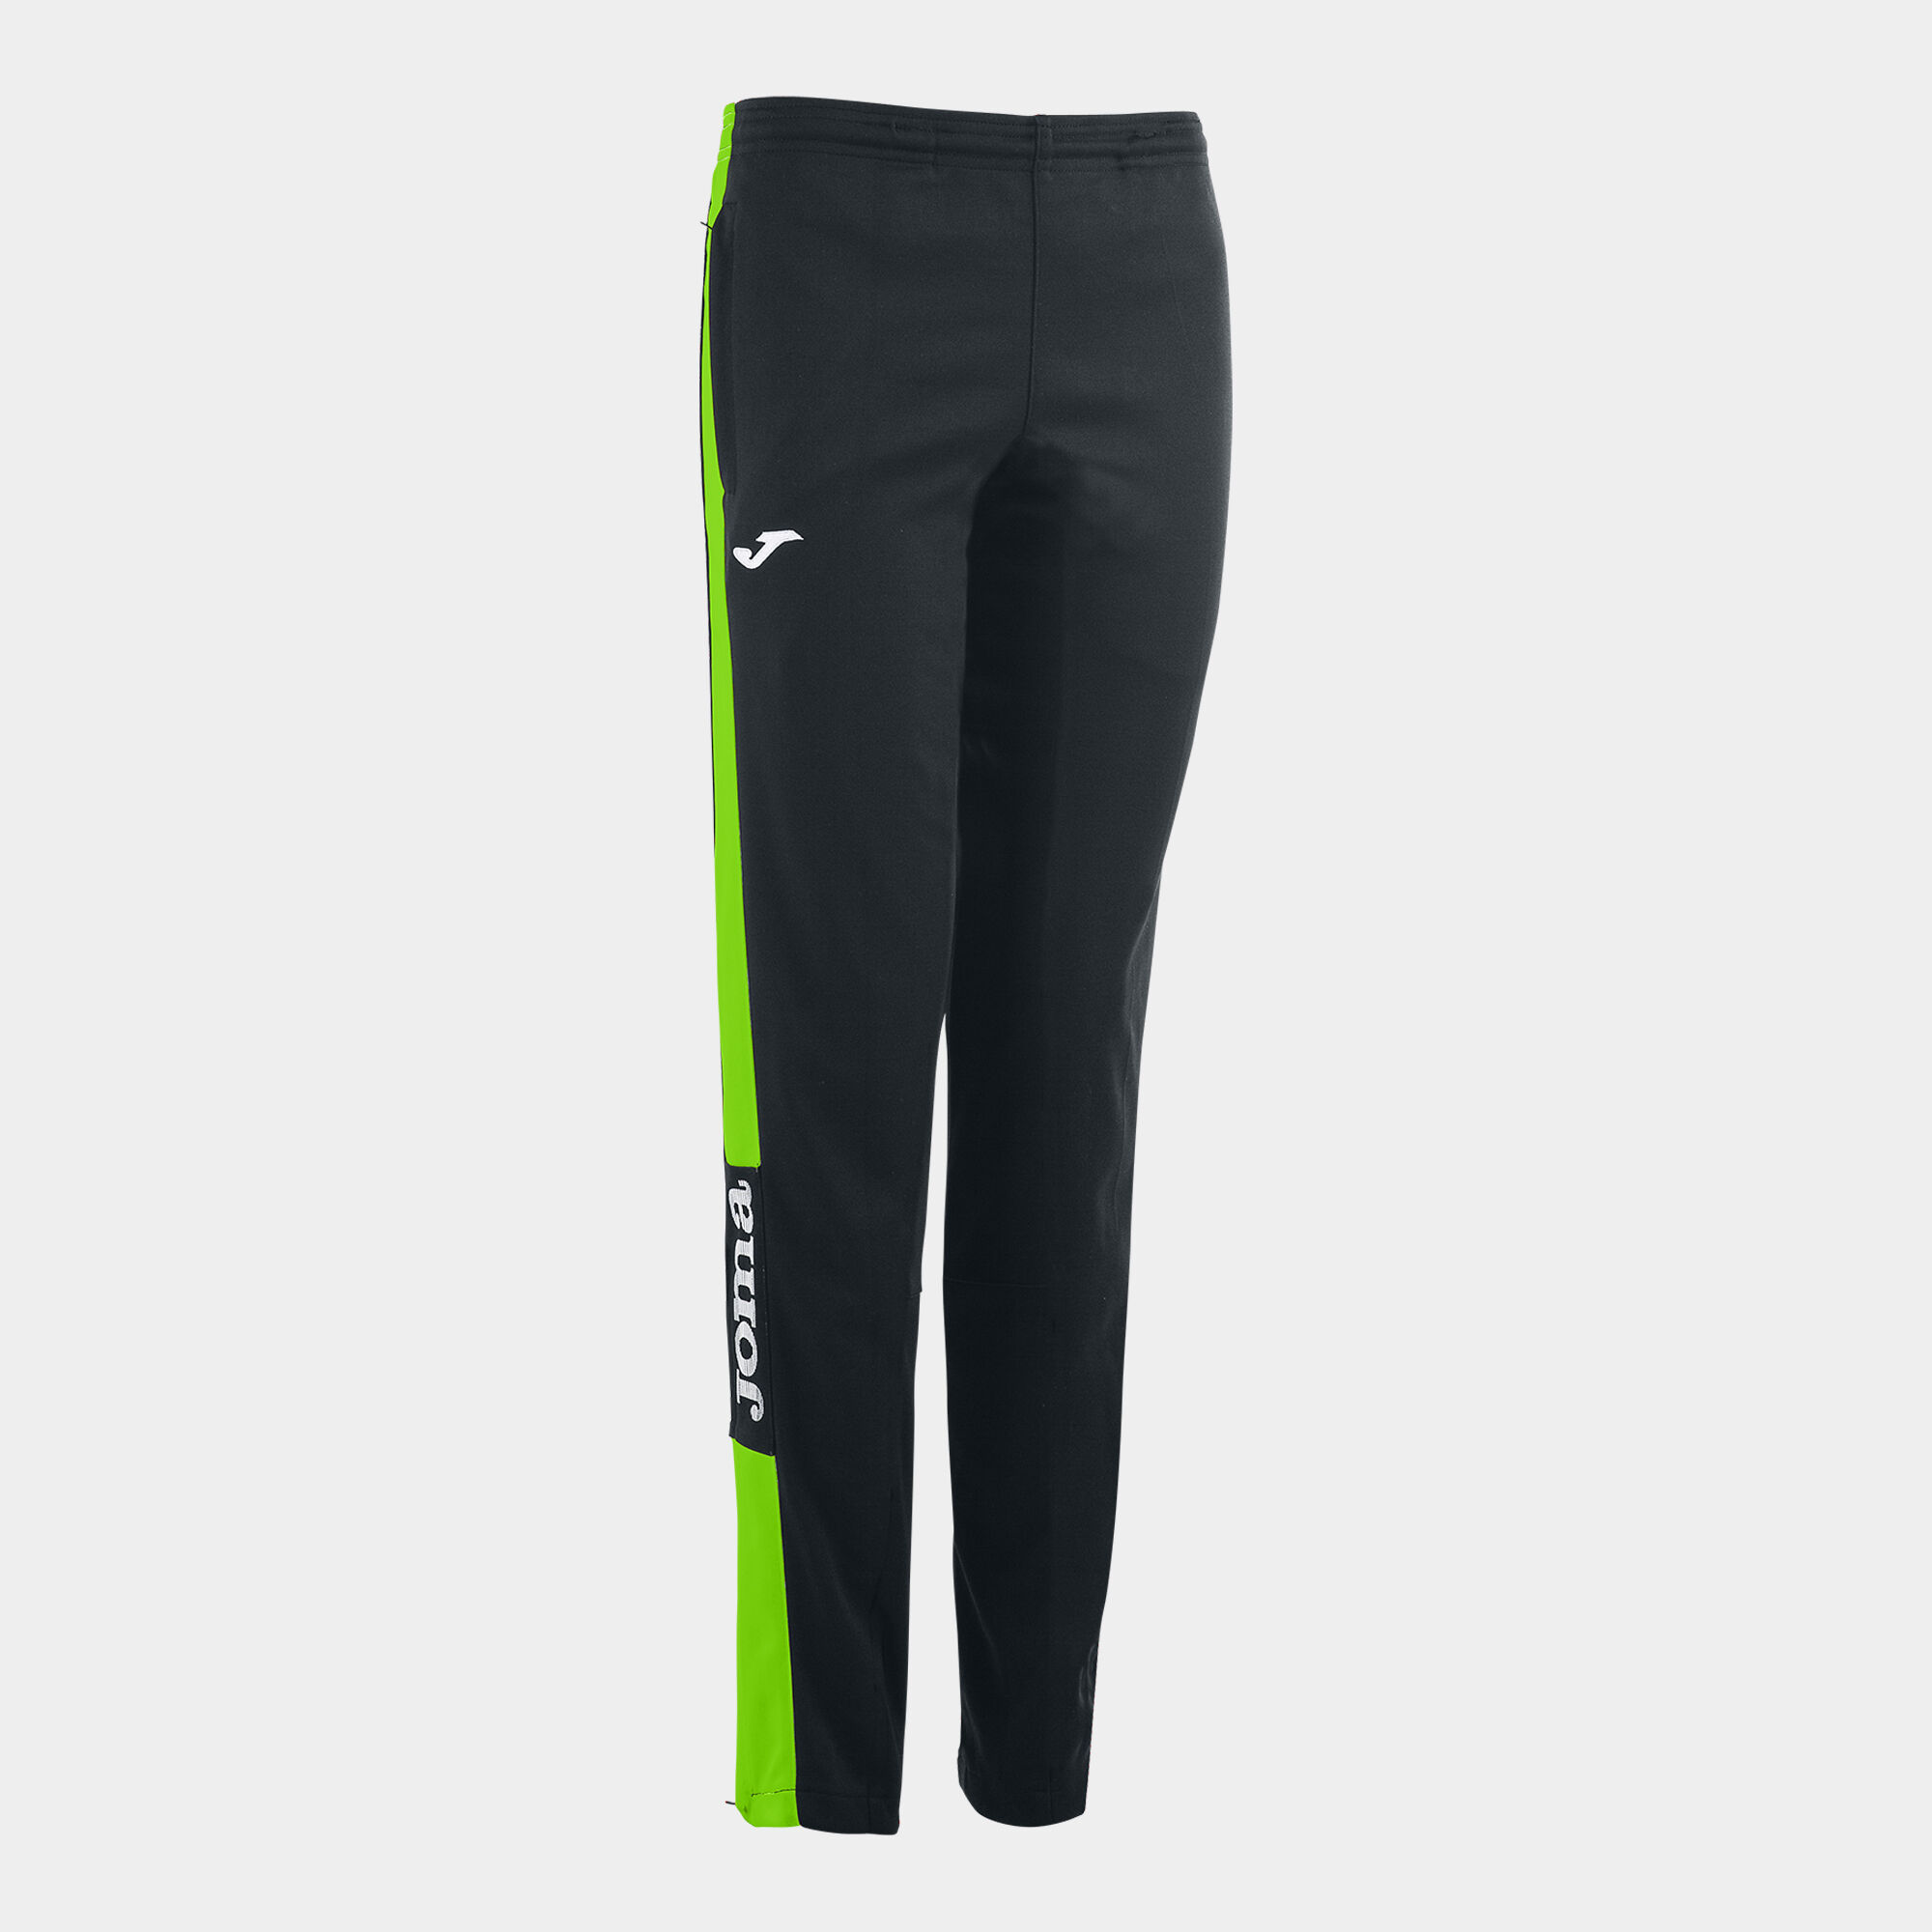 Pantalone lungo donna Championship IV nero verde fluorescente